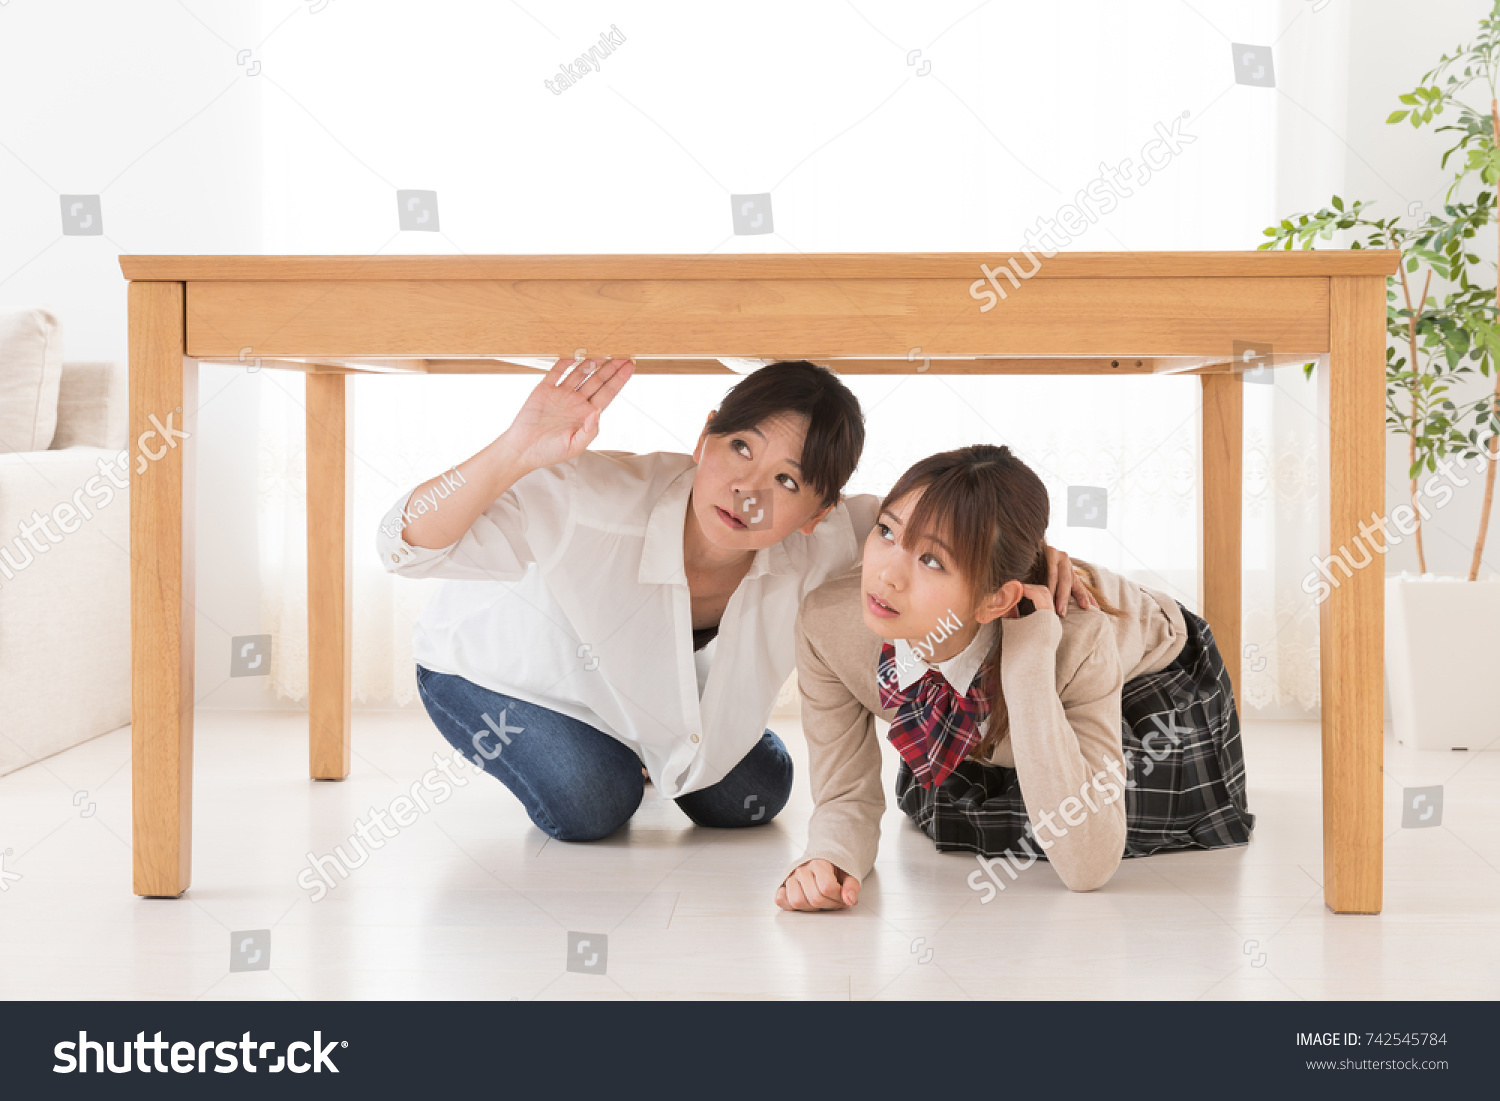 Дочь под столом